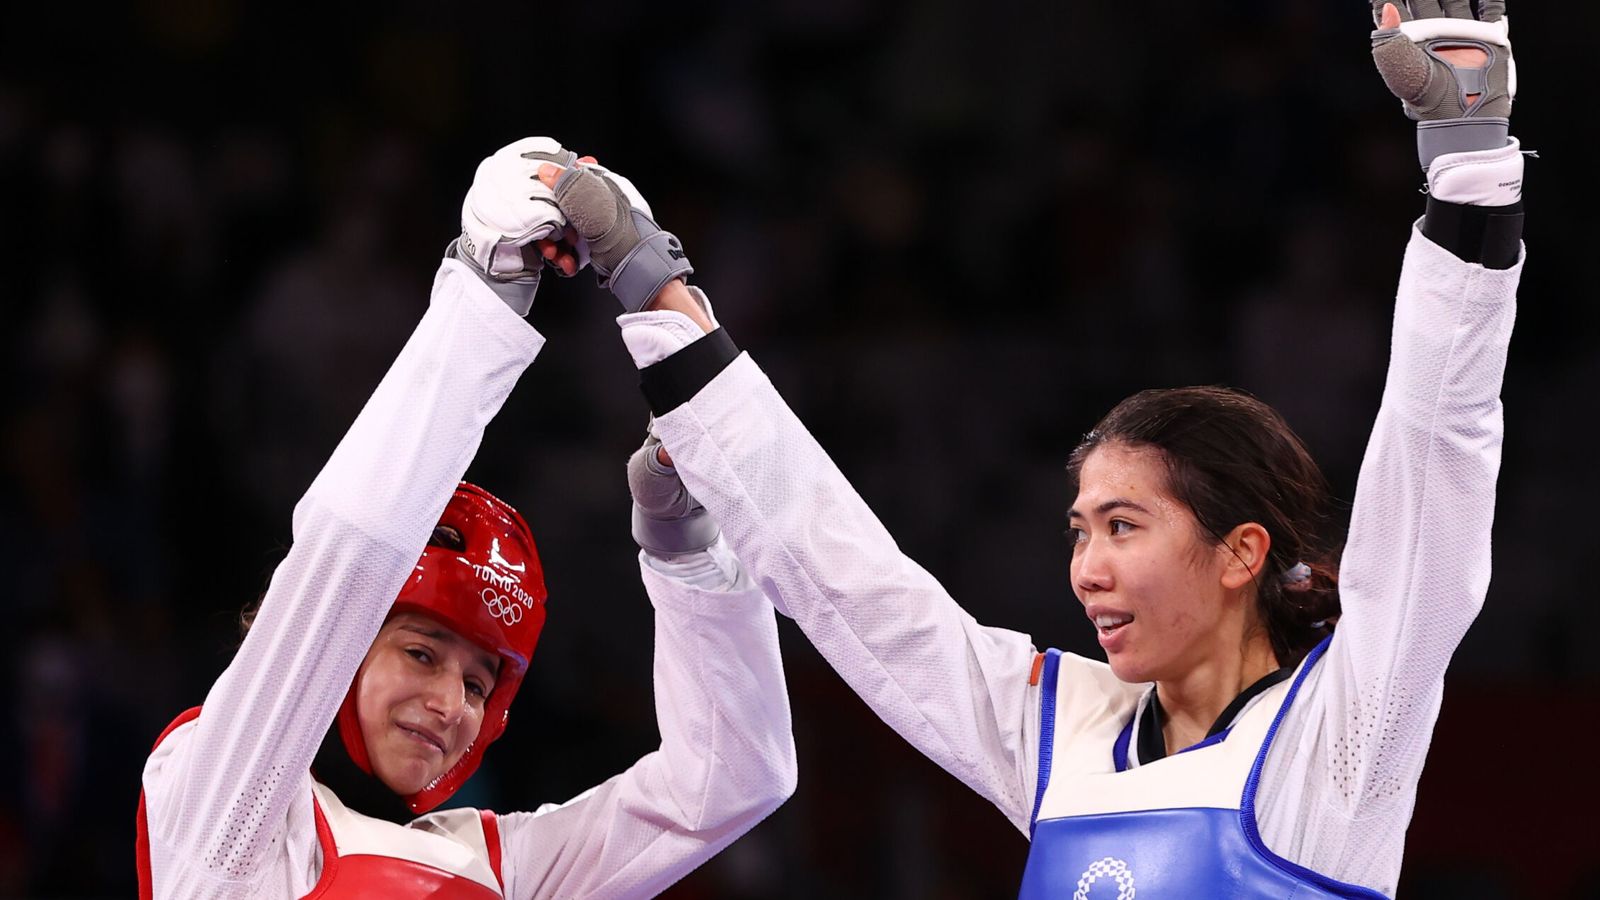 Adriana felicita a su rival tras la final. (Reuters)